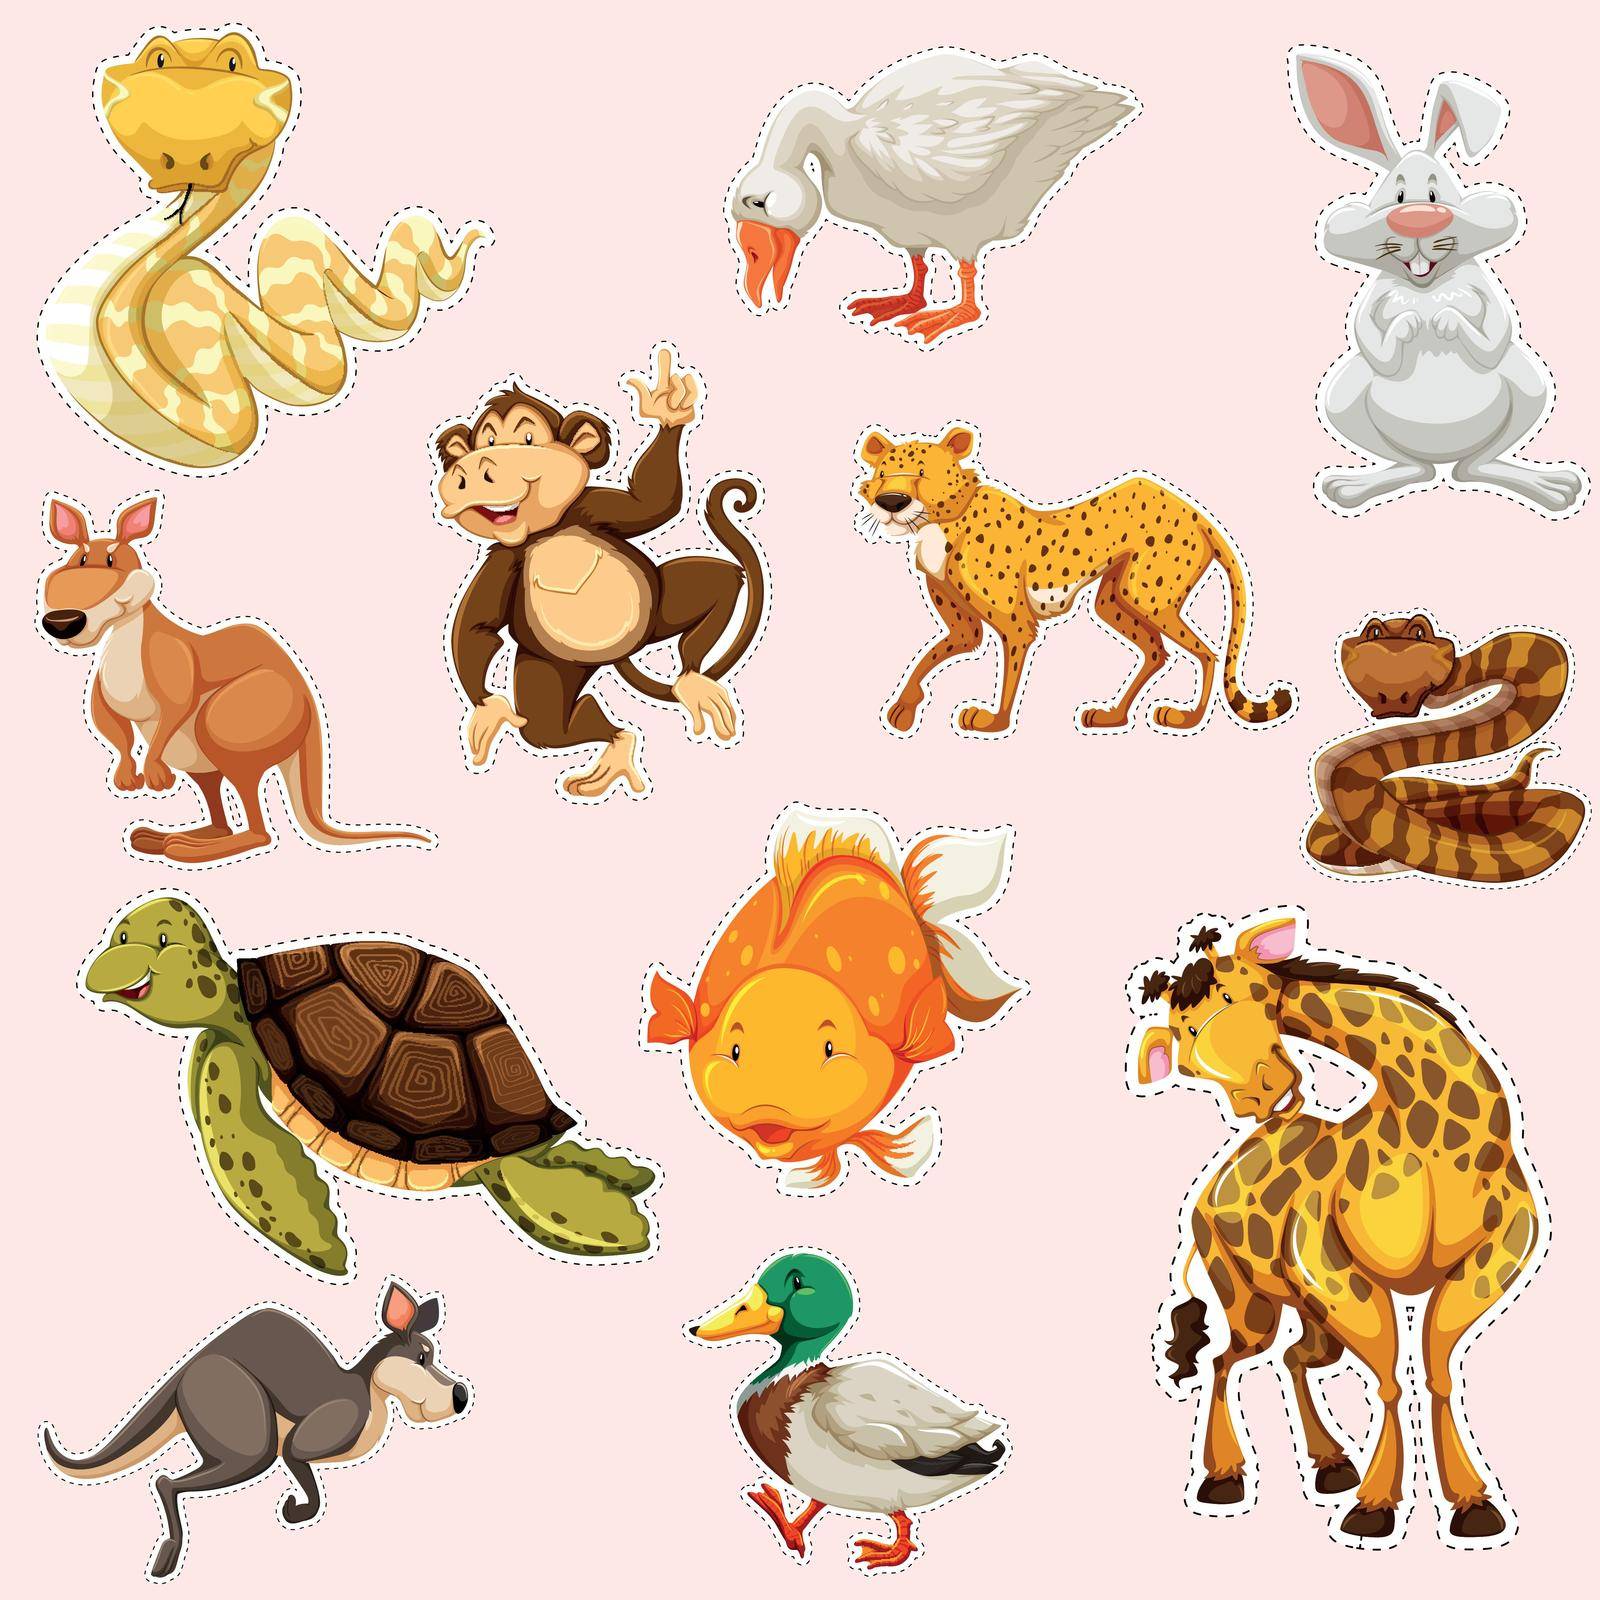 Sticker design for wild animals by iimages